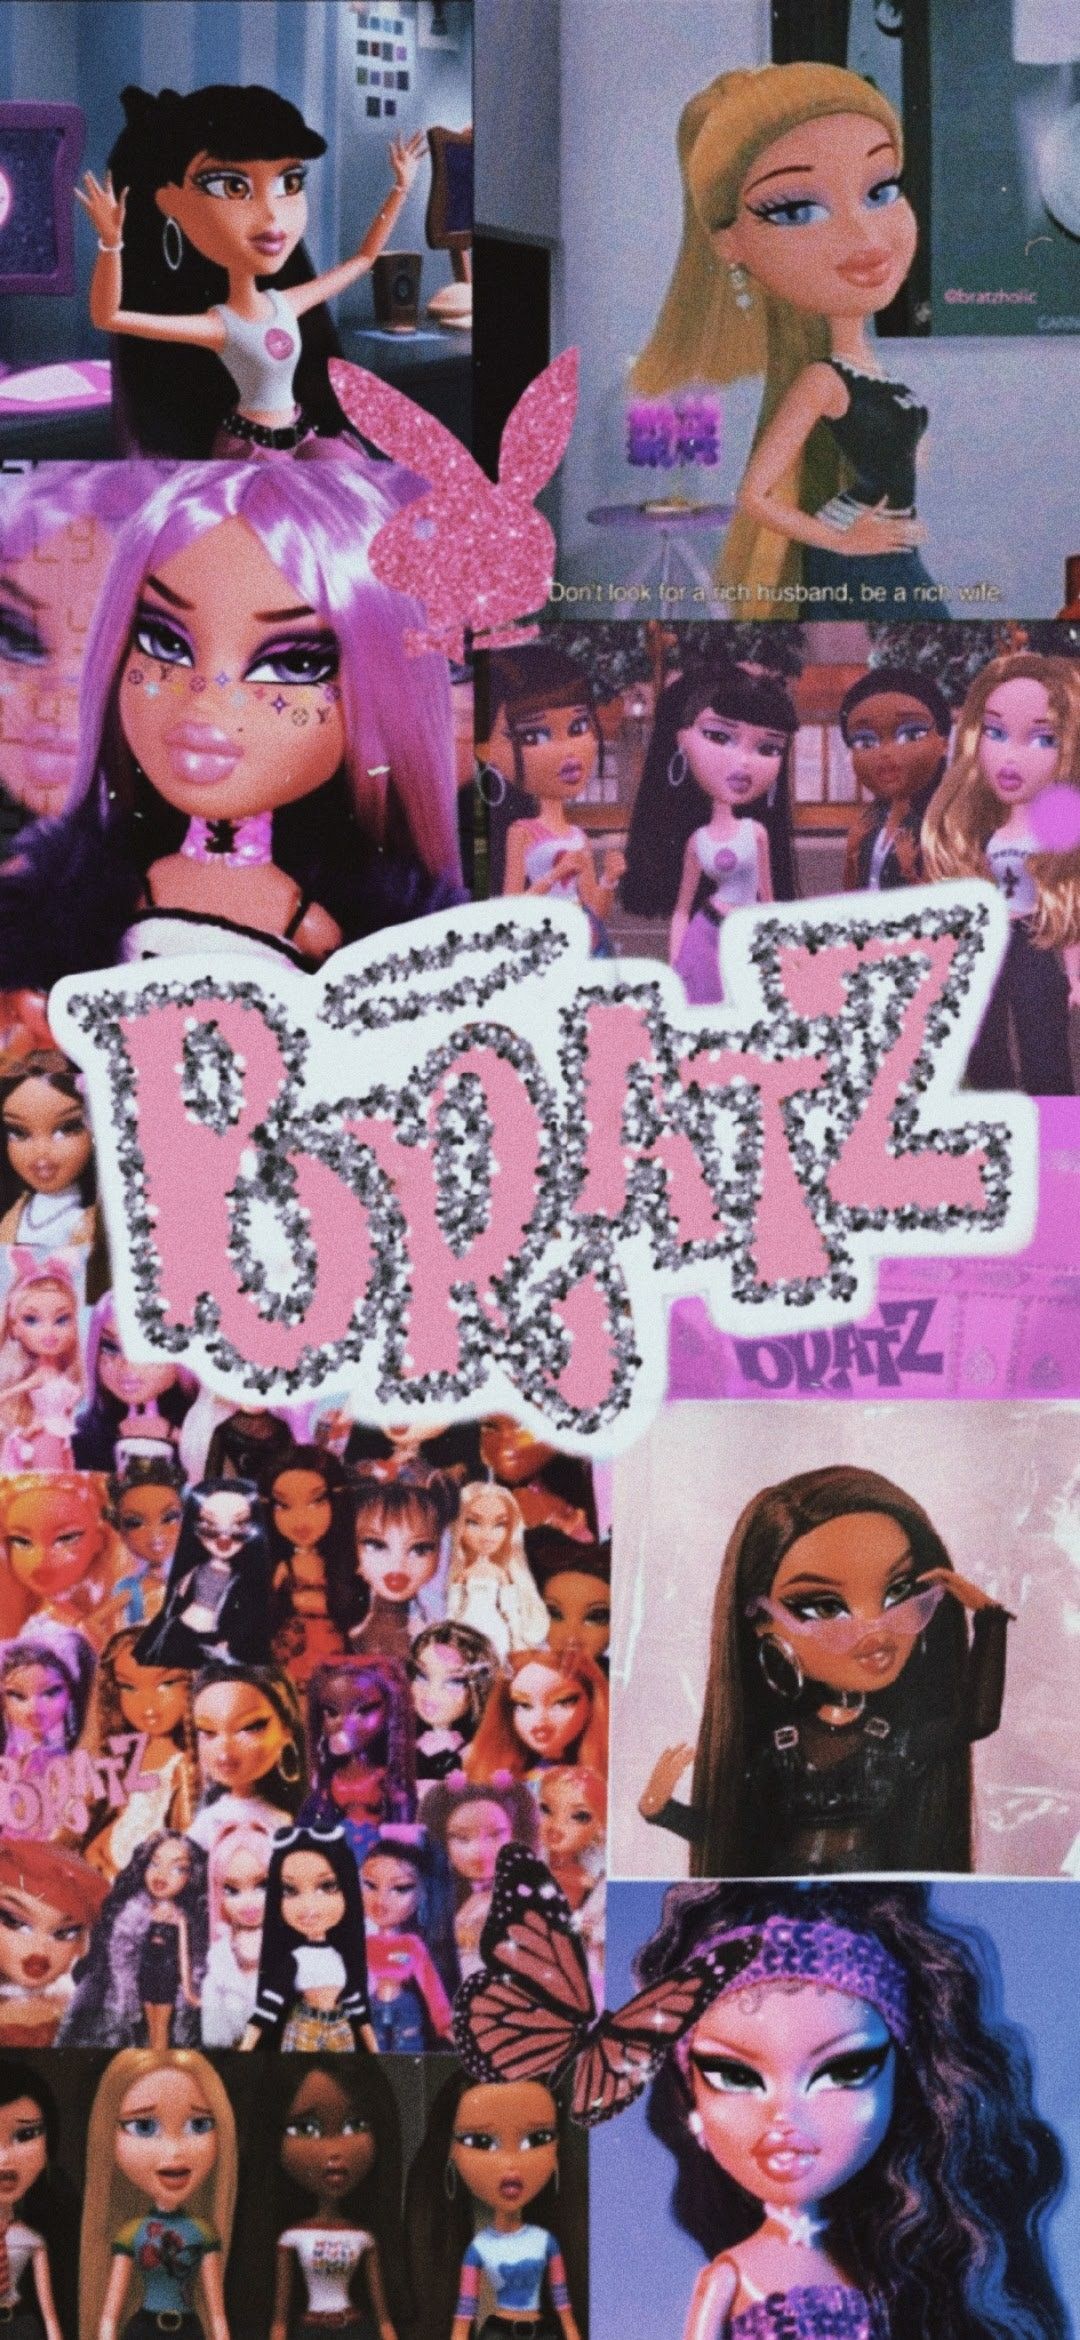 Bratz Dolls Lockscreen Wallpaper. Badass wallpaper iphone, Cute tumblr wallpaper, Bad girl wallpaper